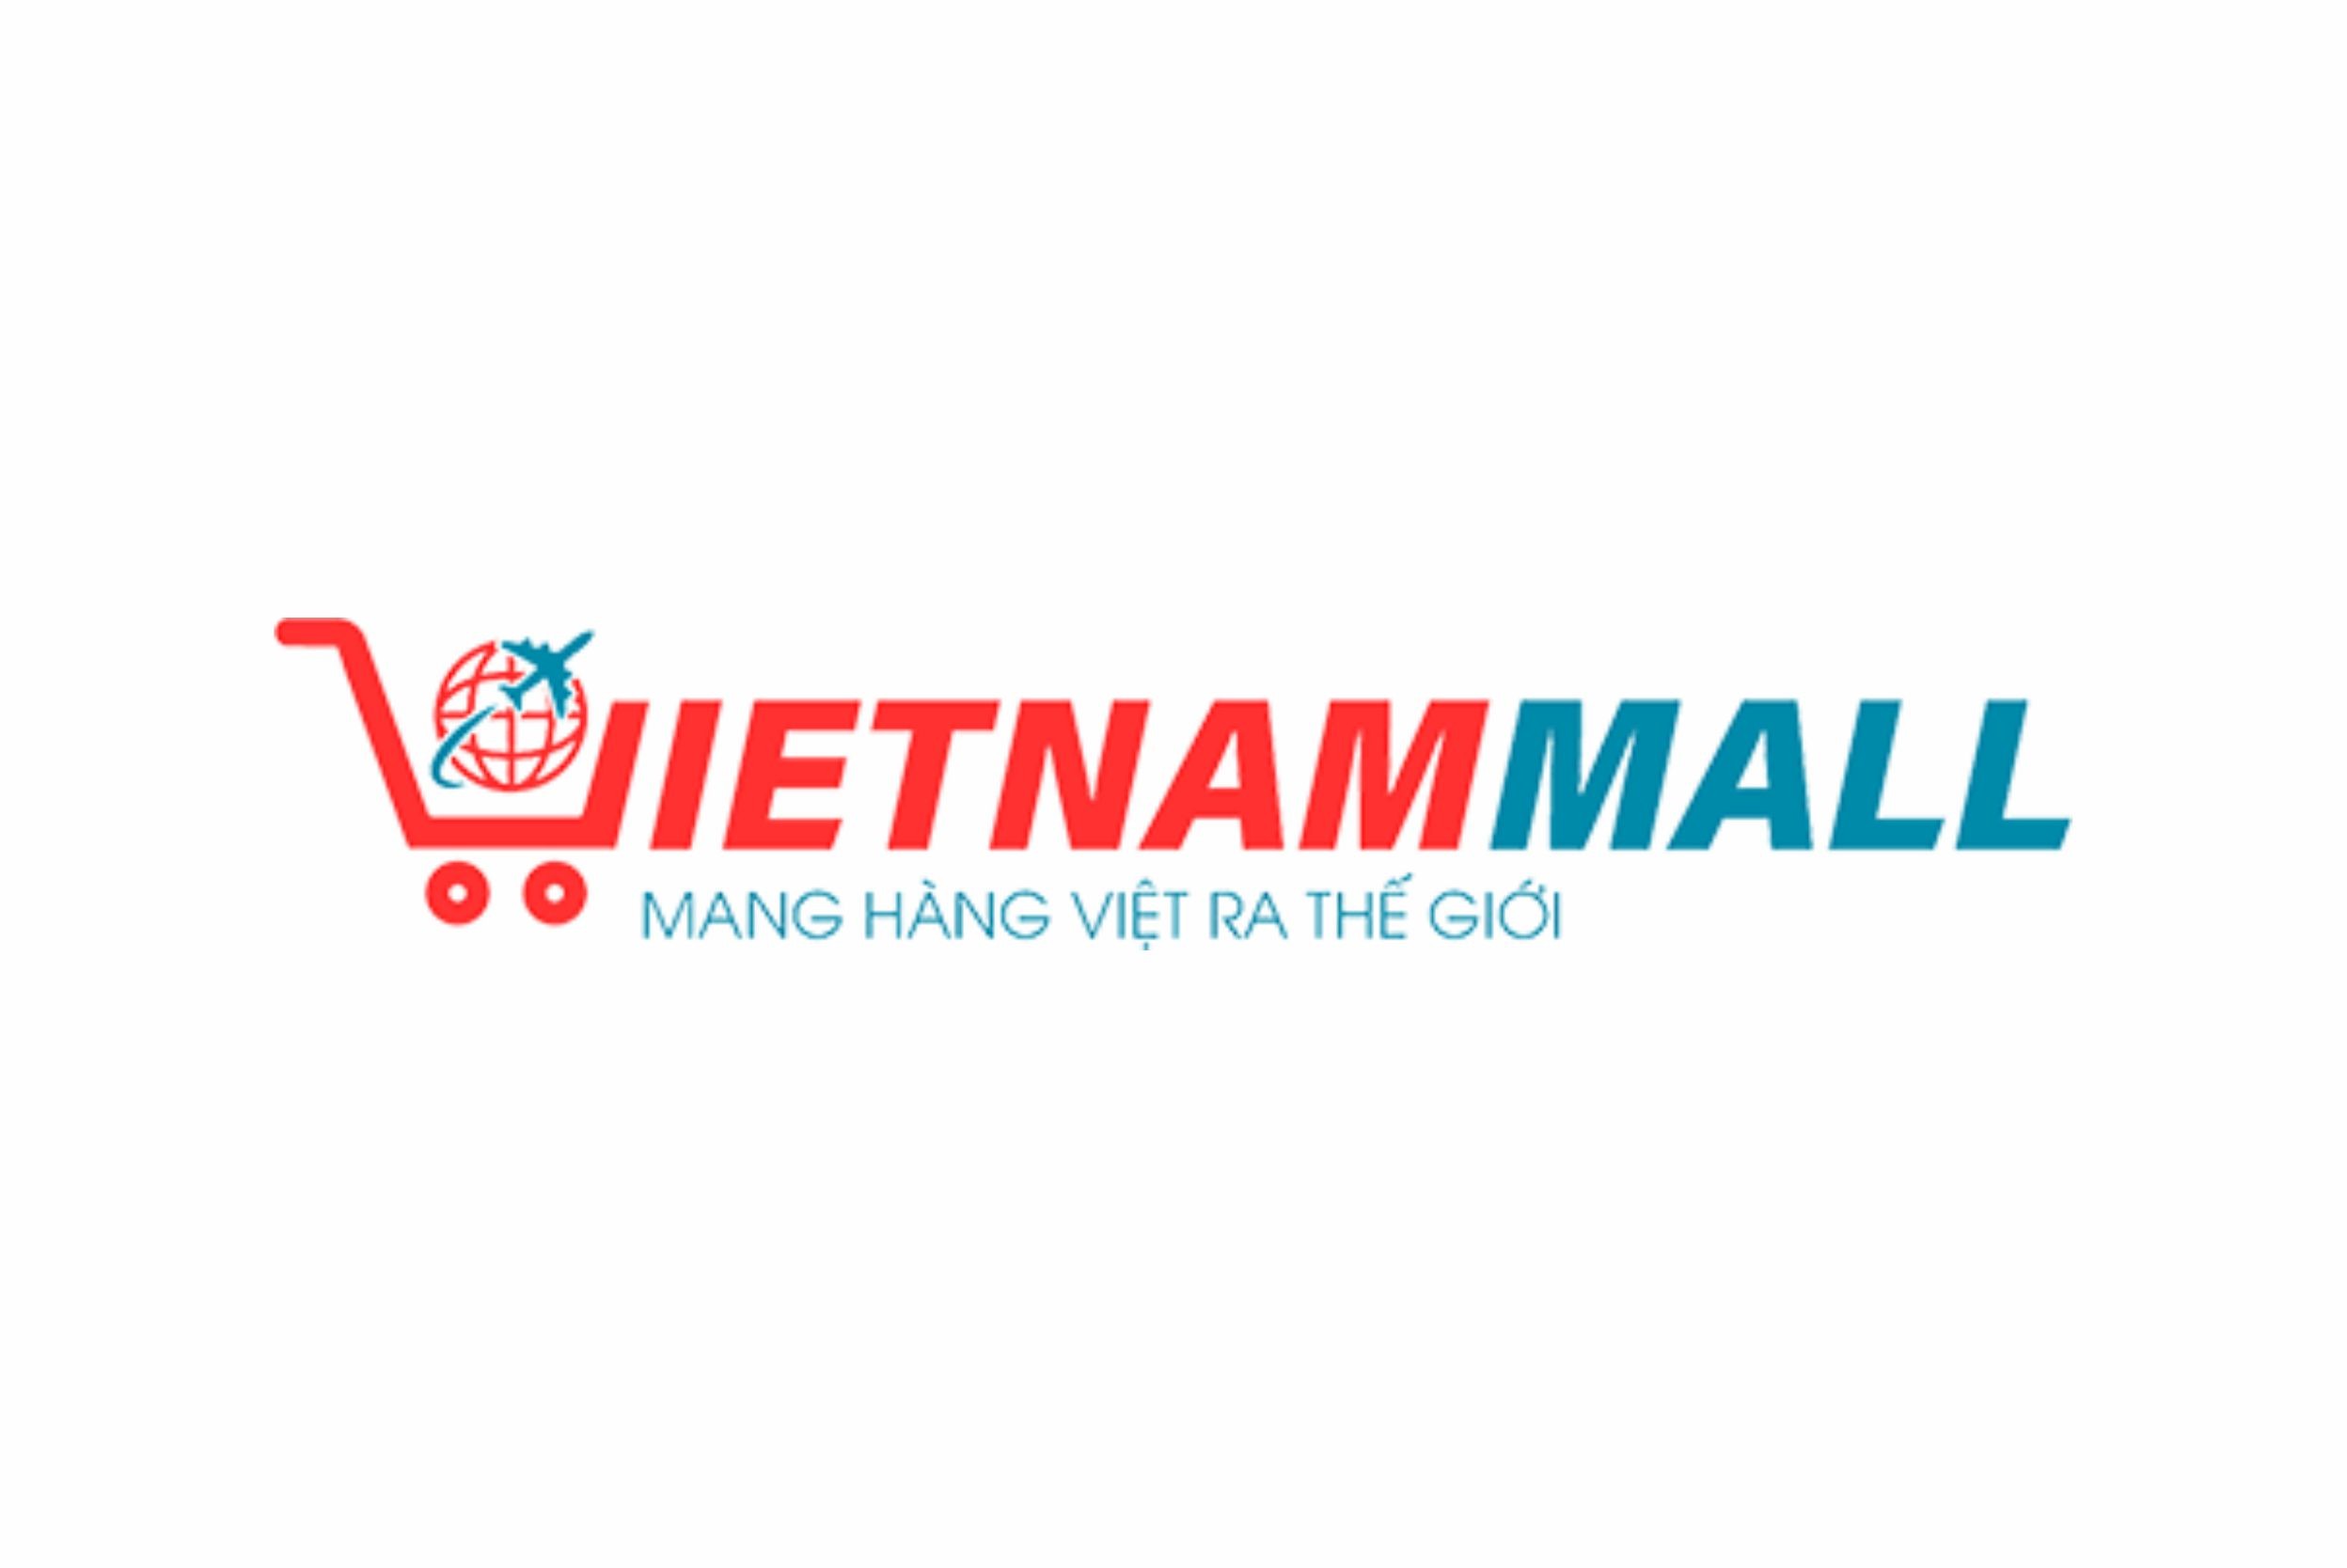 vietnammall-logo.jpg